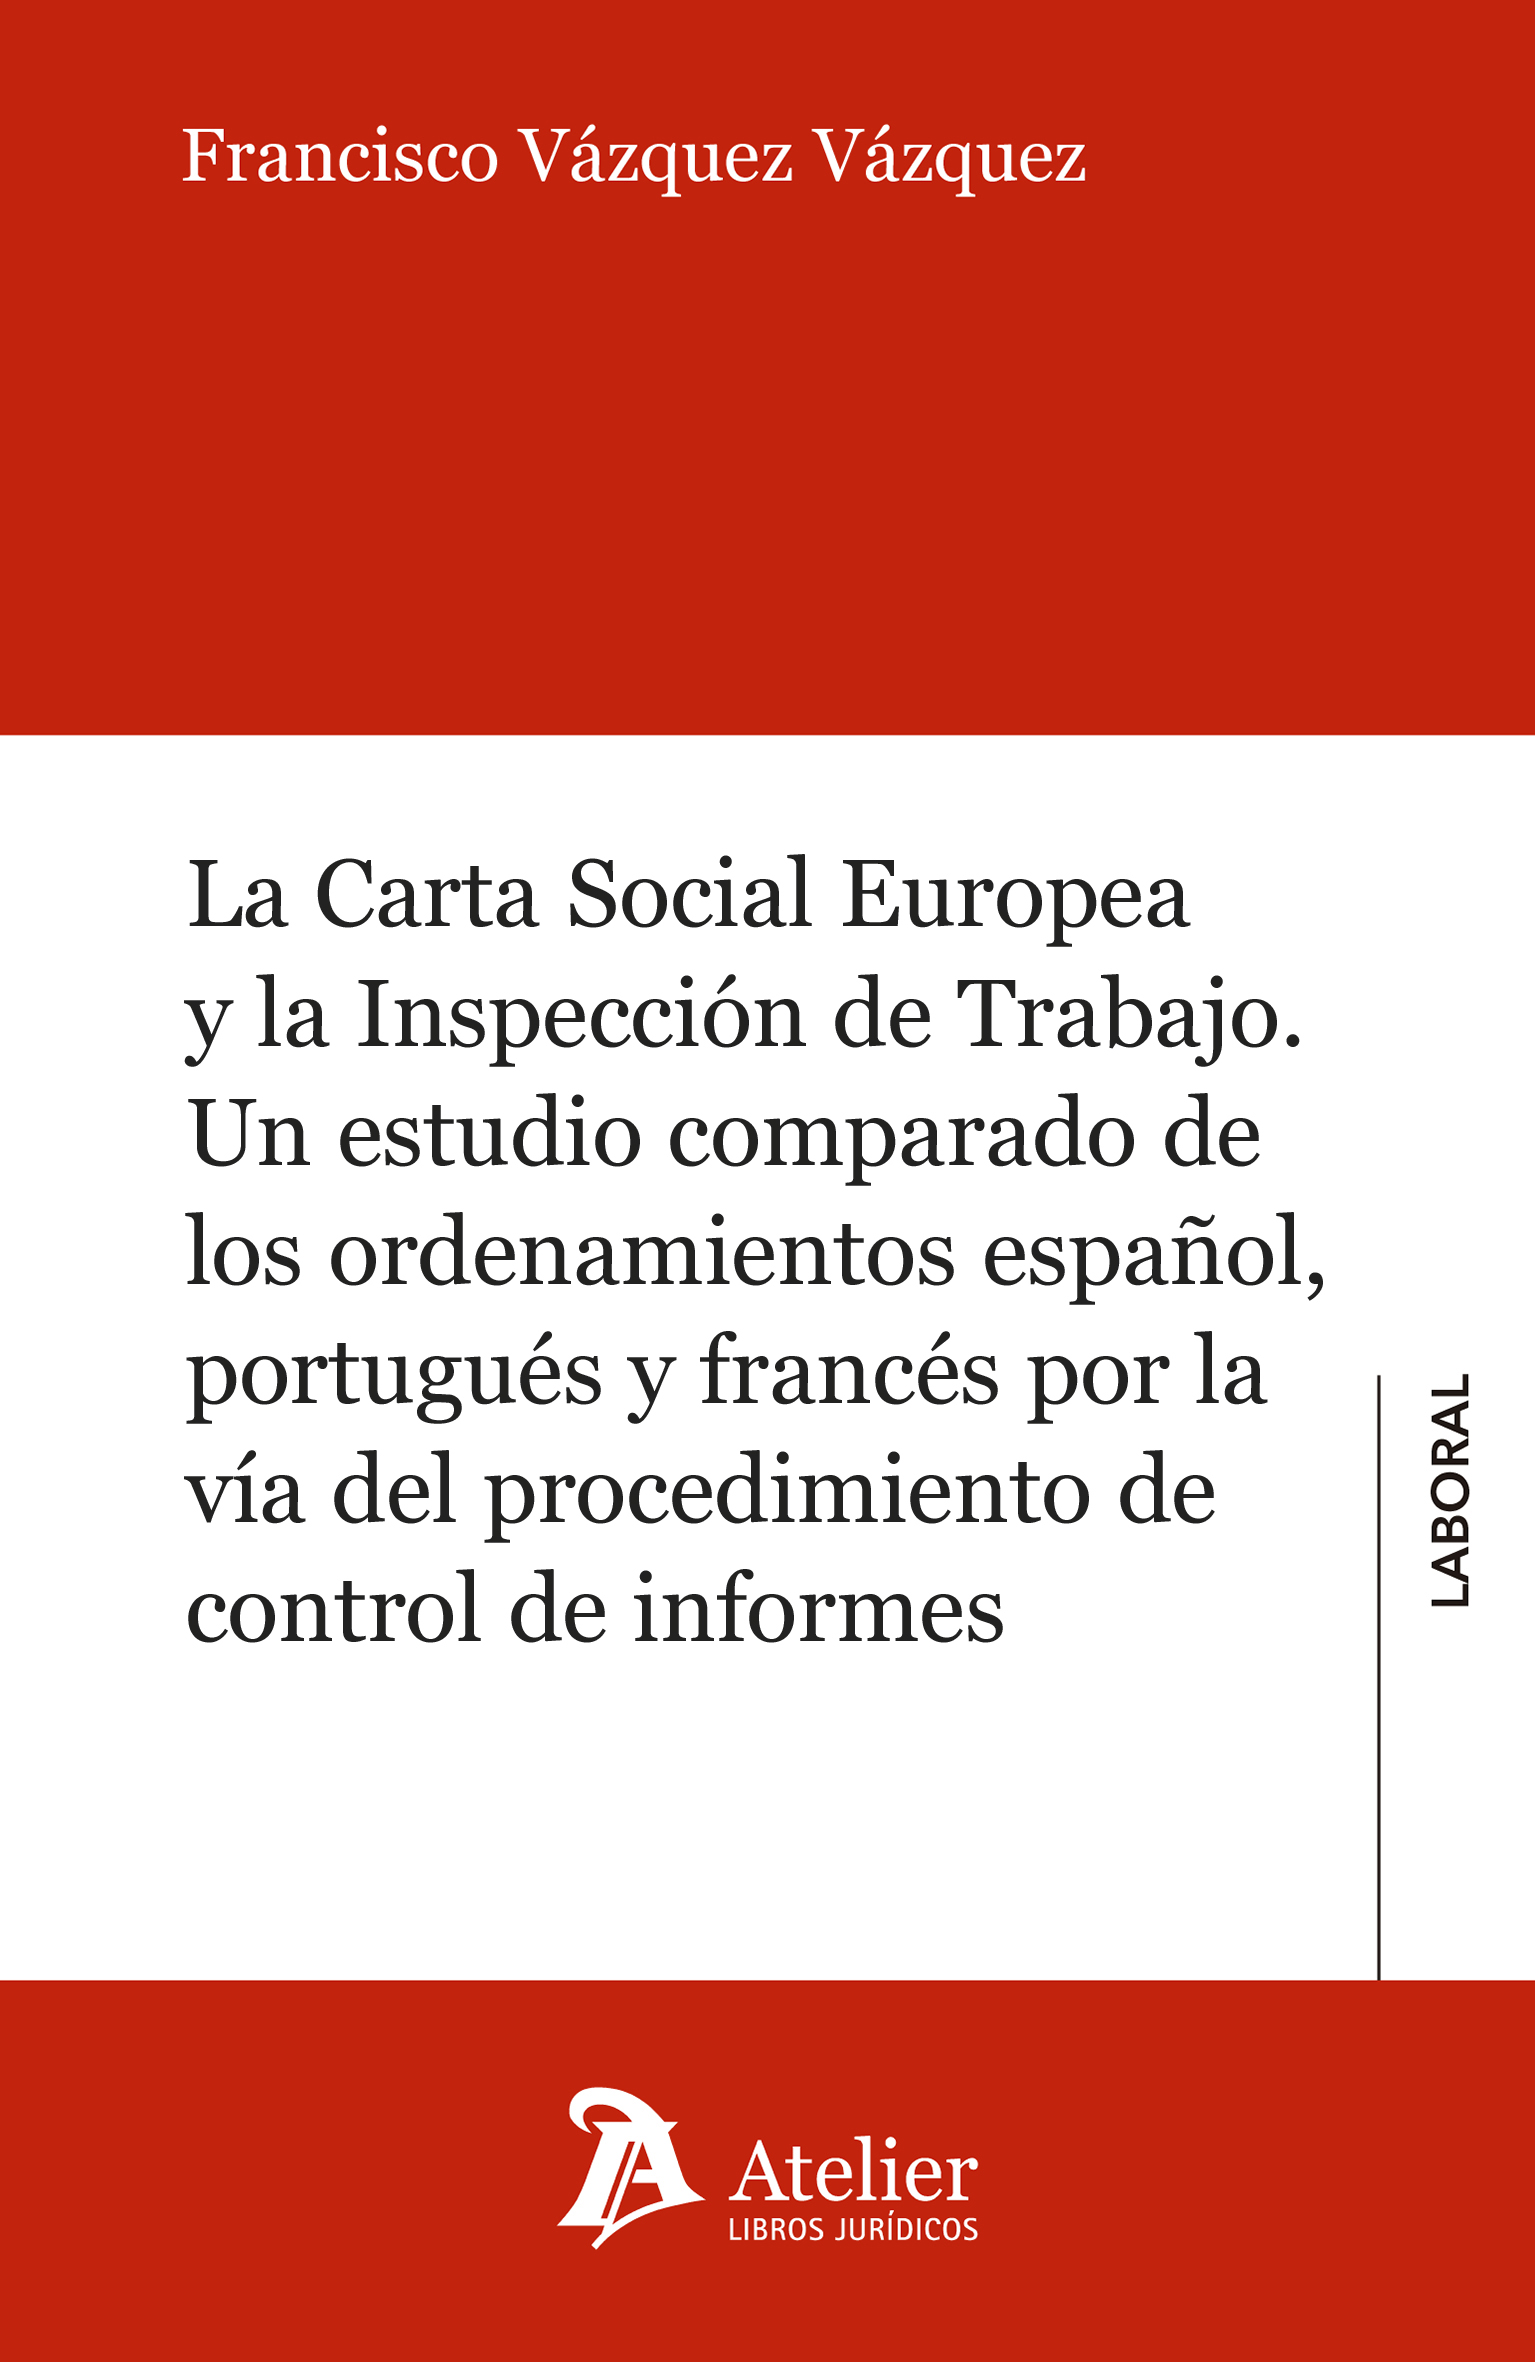 La Carta Social Europea y la inspección de trabajo